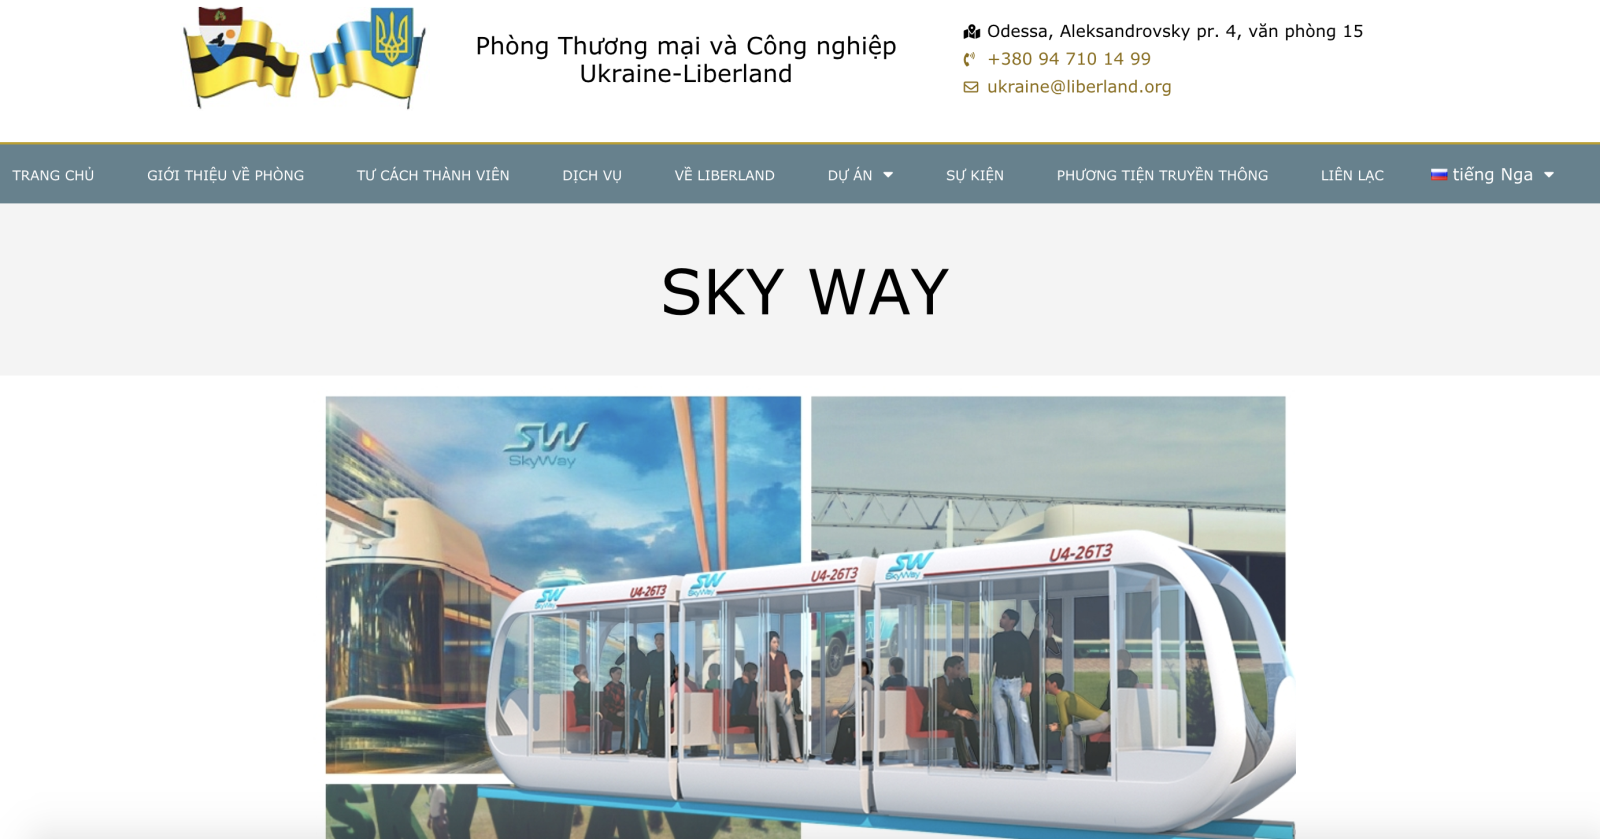 Phòng thương mại và công nghiệp Ukraina nói về Skyway